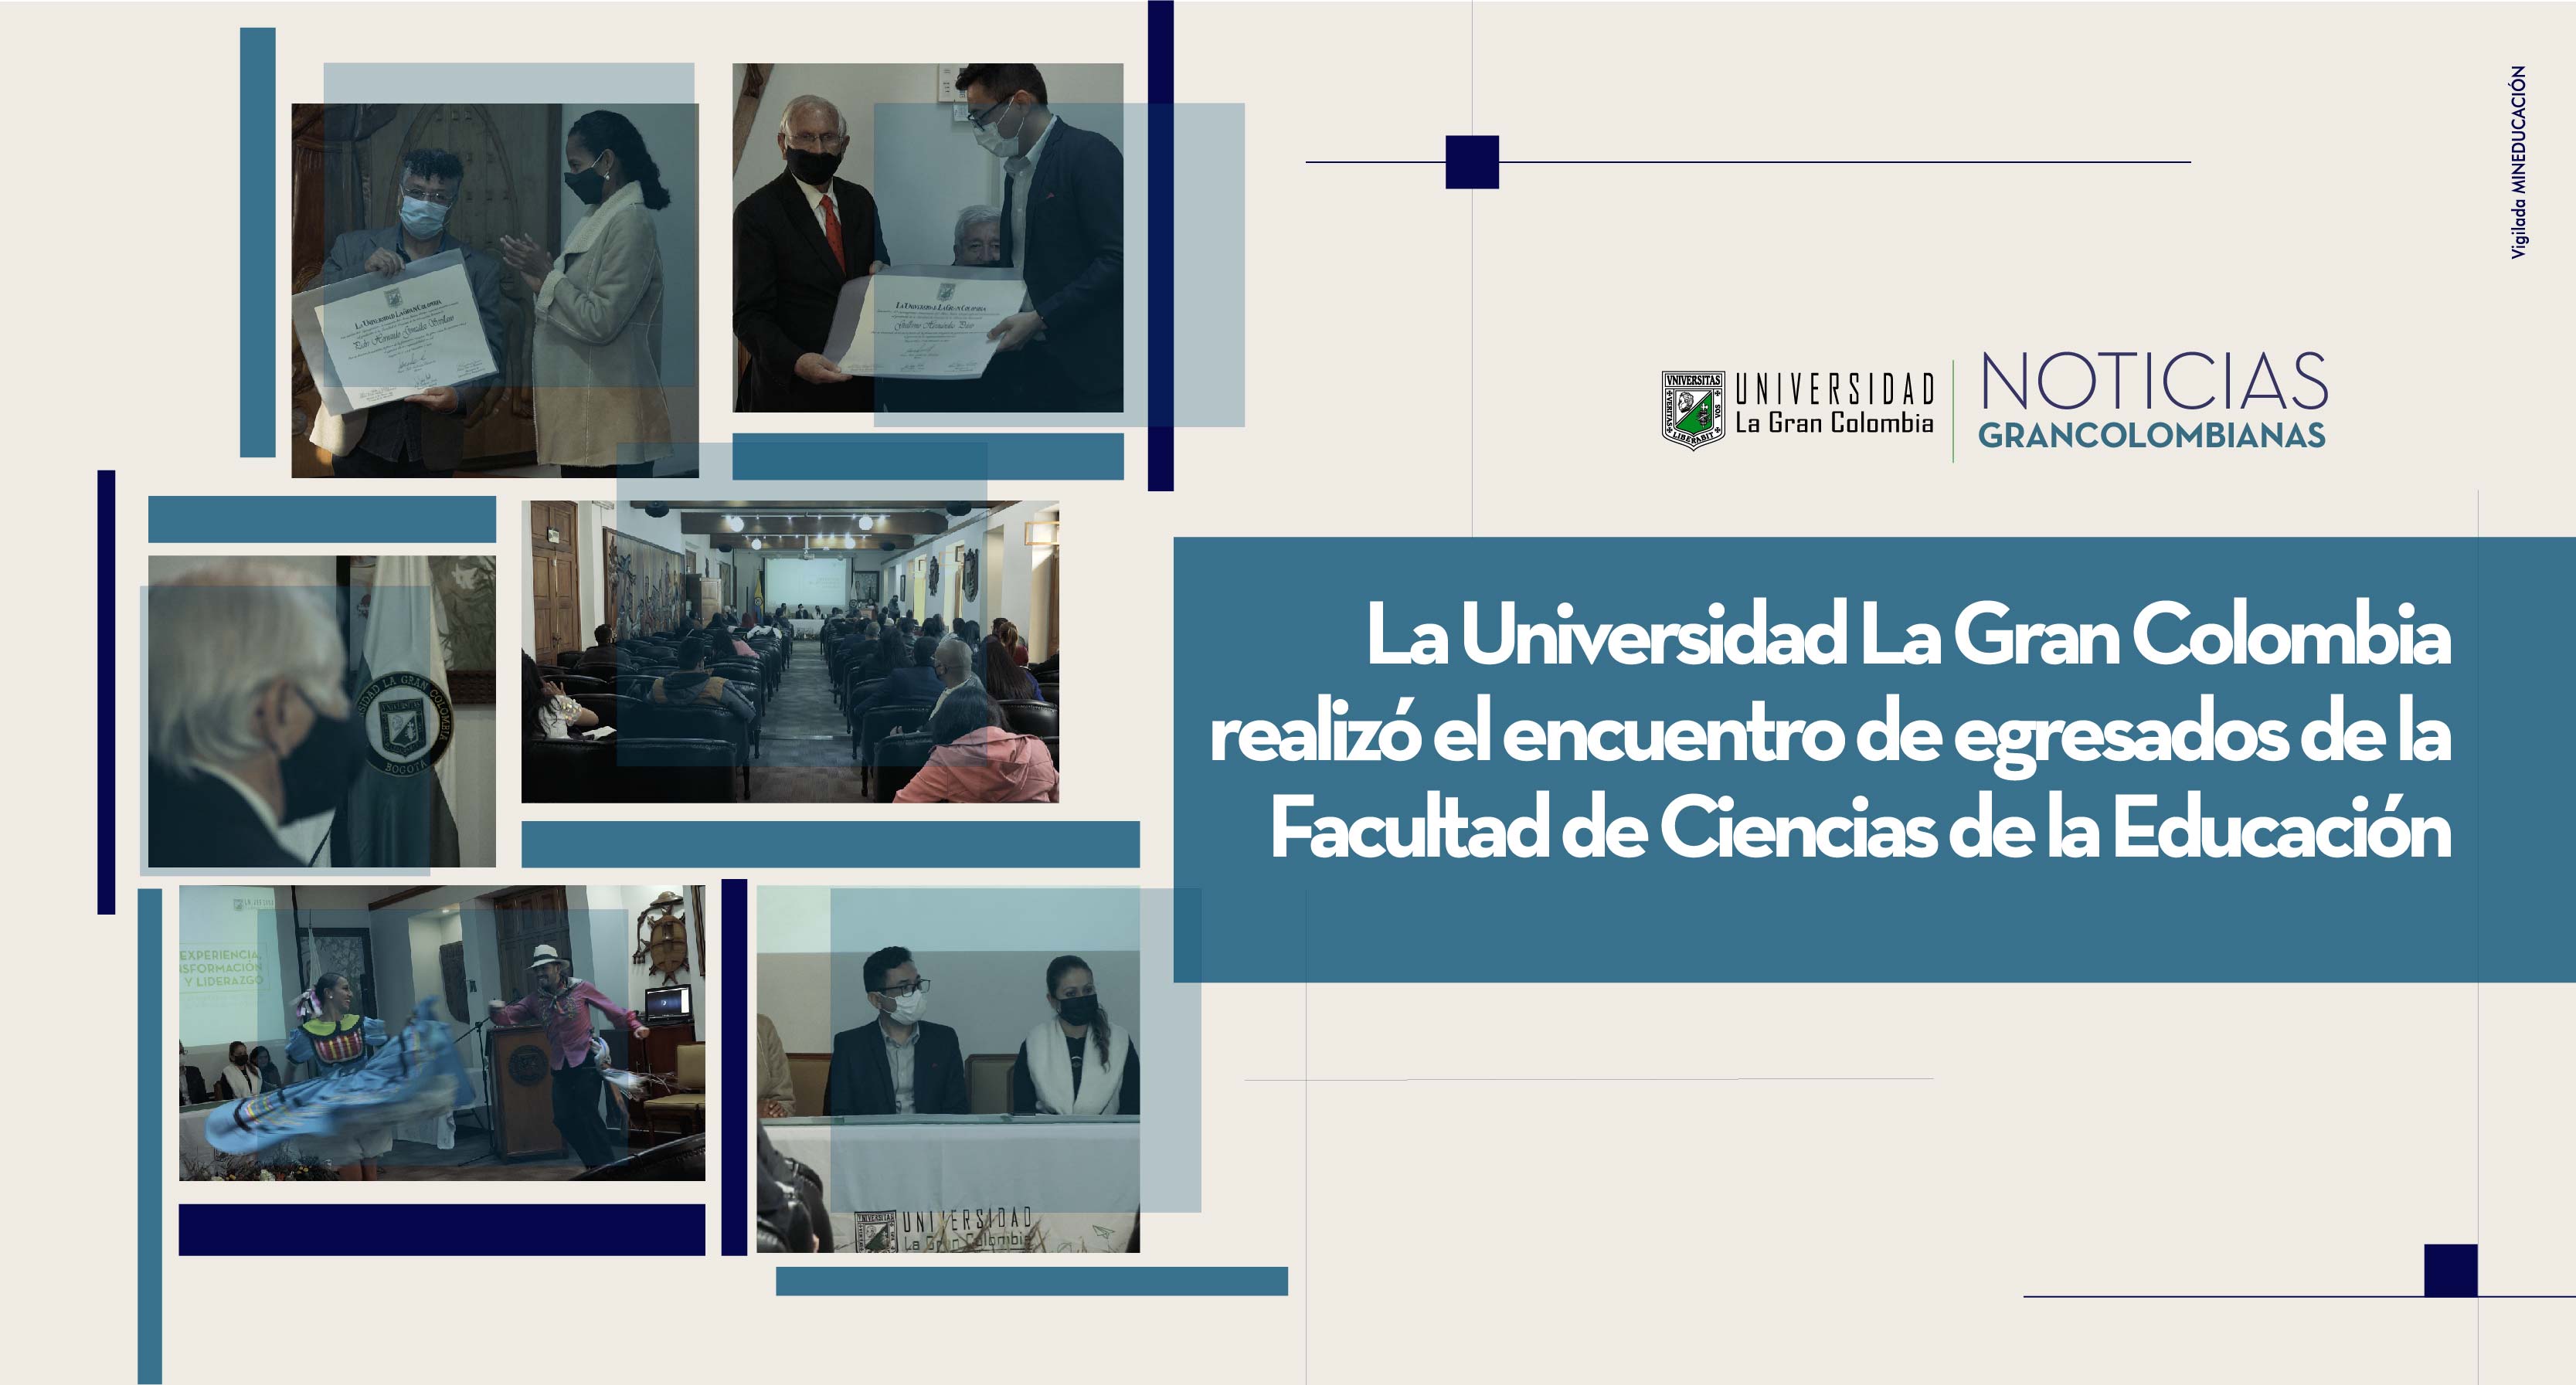 La Universidad La Gran Colombia realizó el encuentro de egresados de la Facultad de Ciencias de la Educación